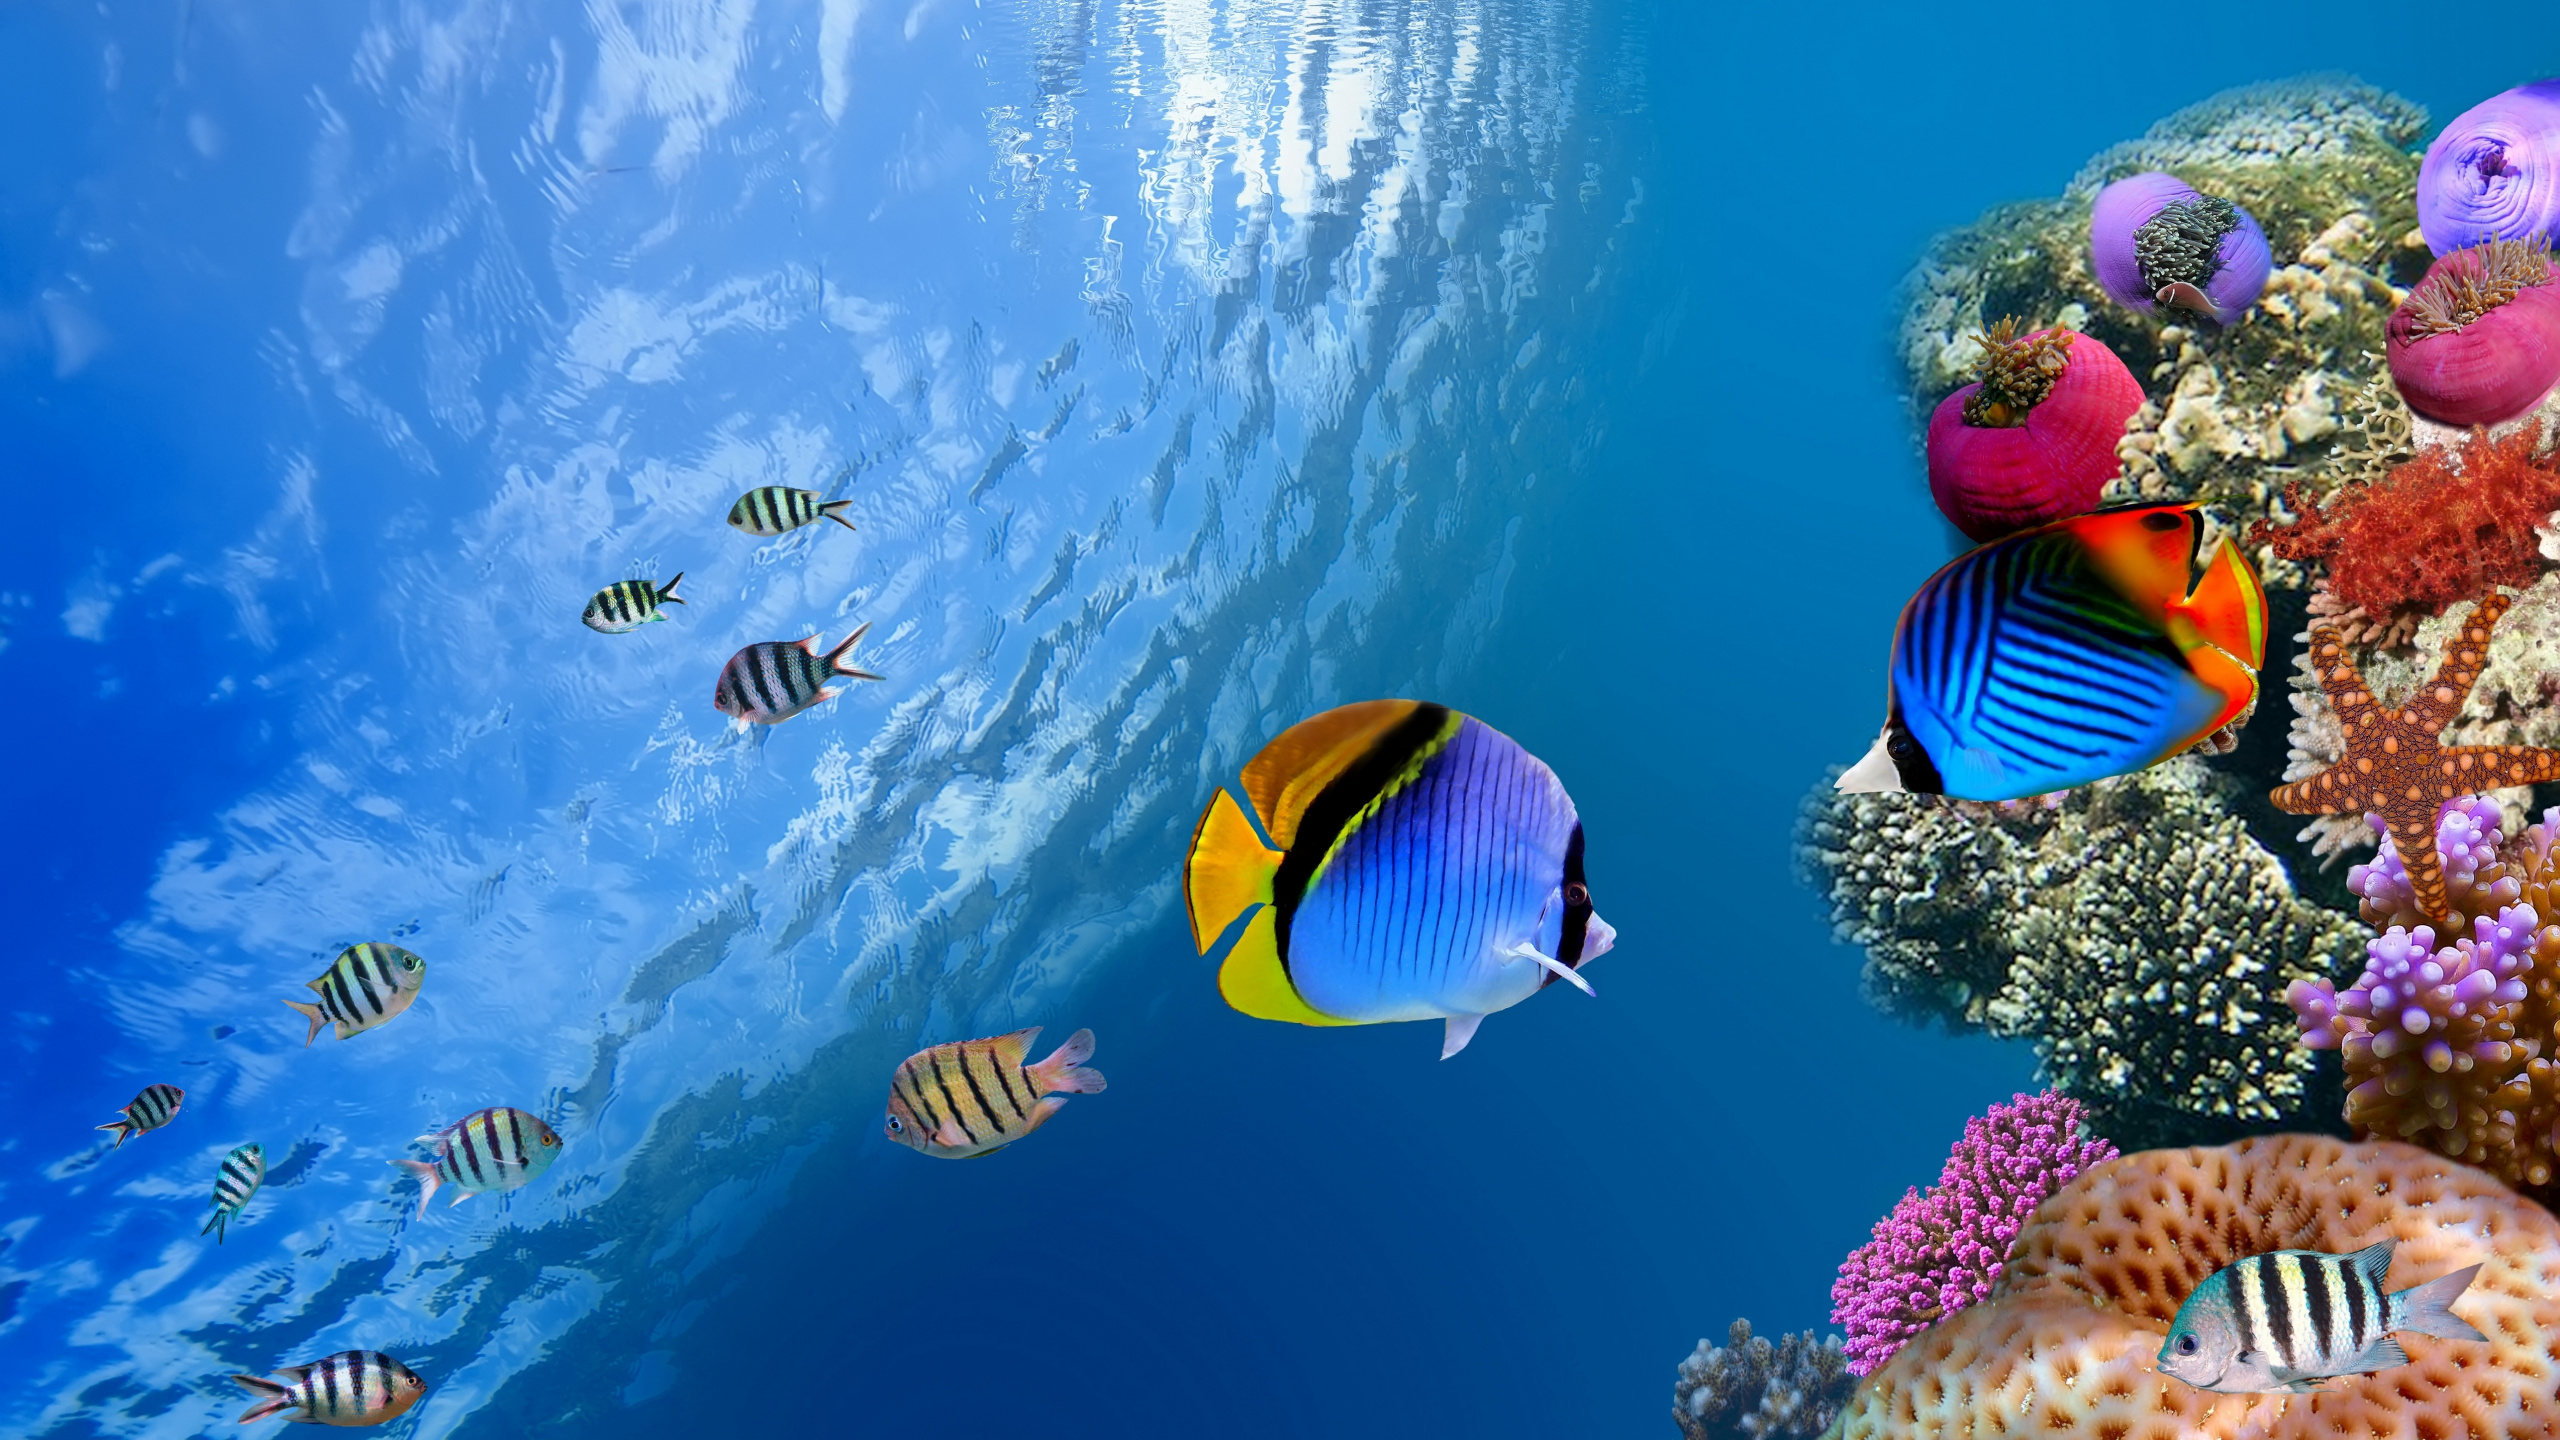 珊瑚礁的鱼, 水下, 海洋生物学, 珊瑚礁, 生态系统 壁纸 2560x1440 允许